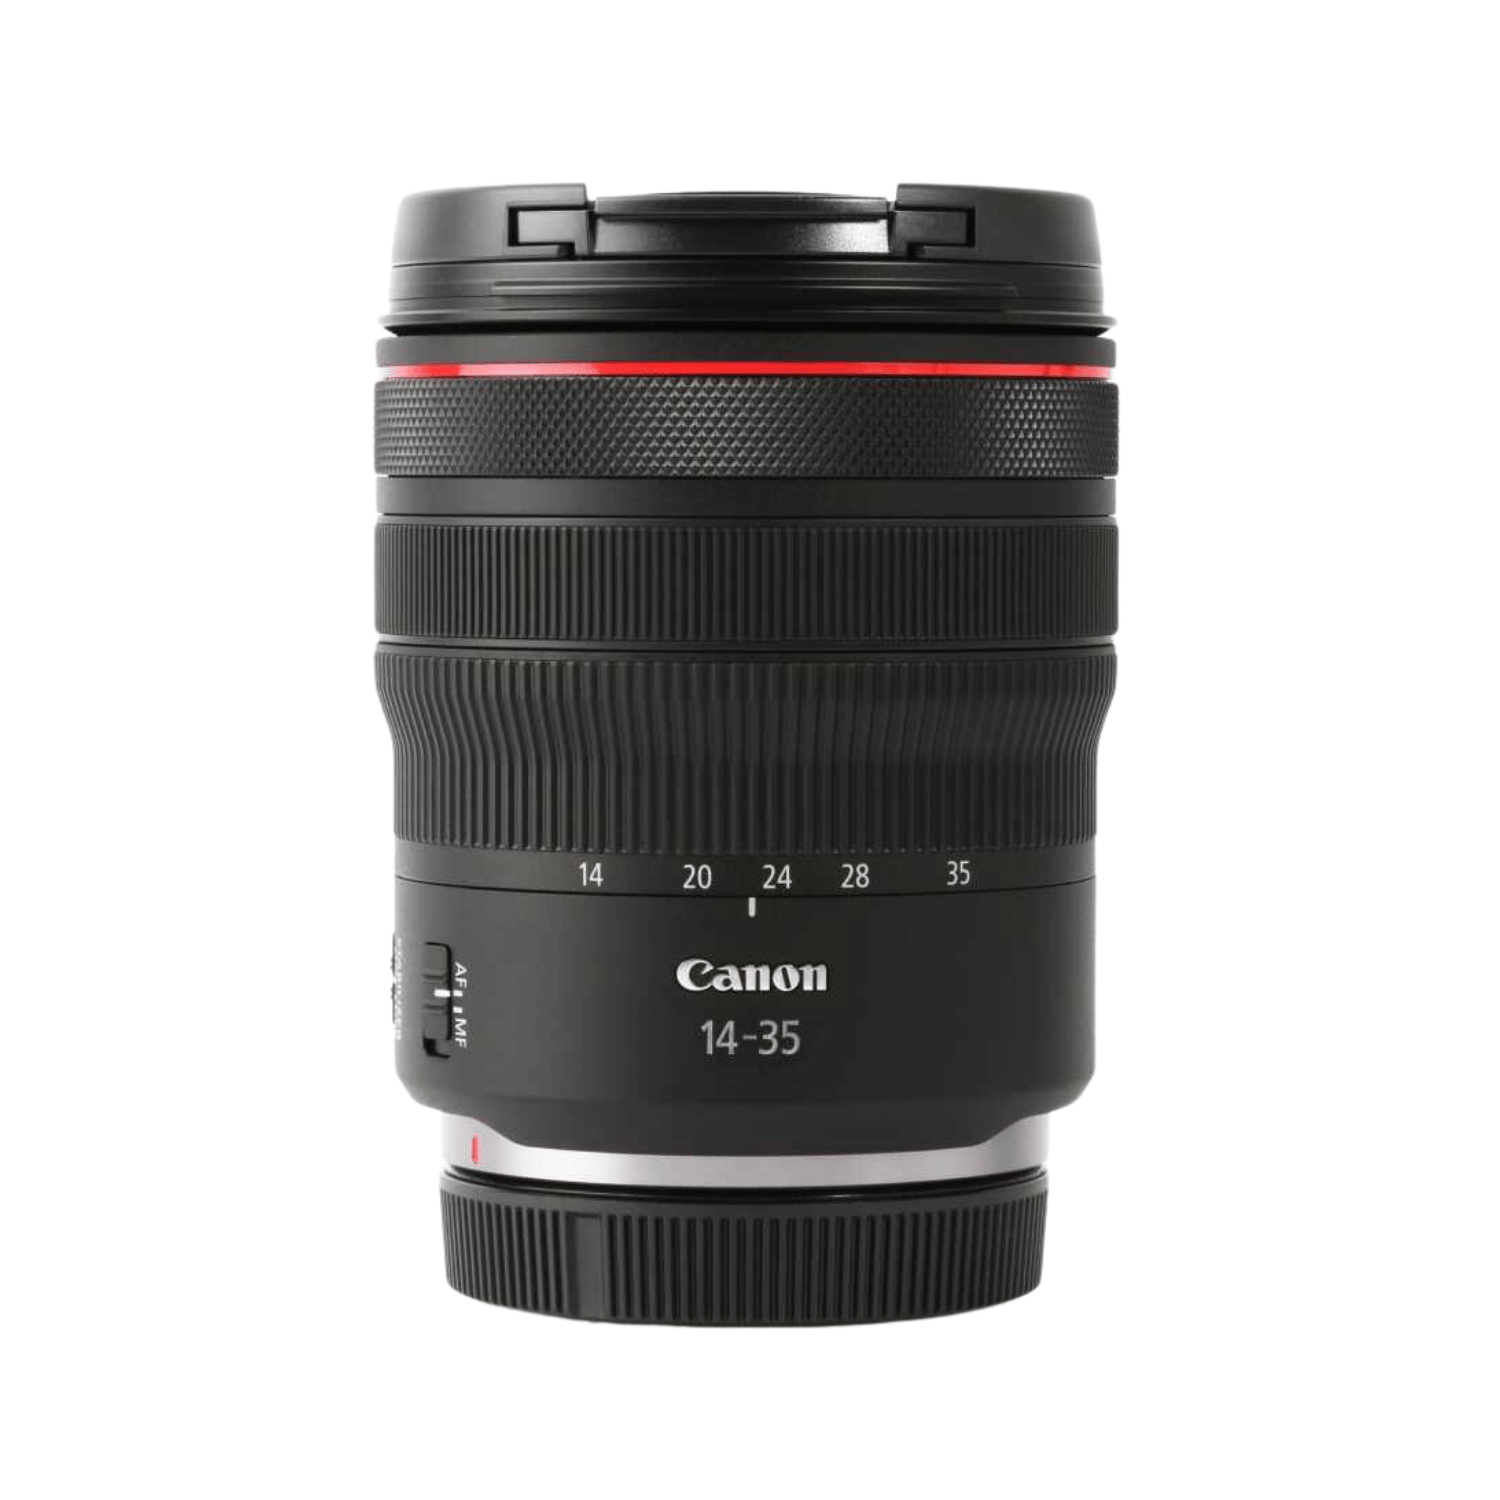 CANON RF 14-35mm F4 L IS USM - Garanzia Canon Italia - Cine Sud è da 48 anni sul mercato!4857C005